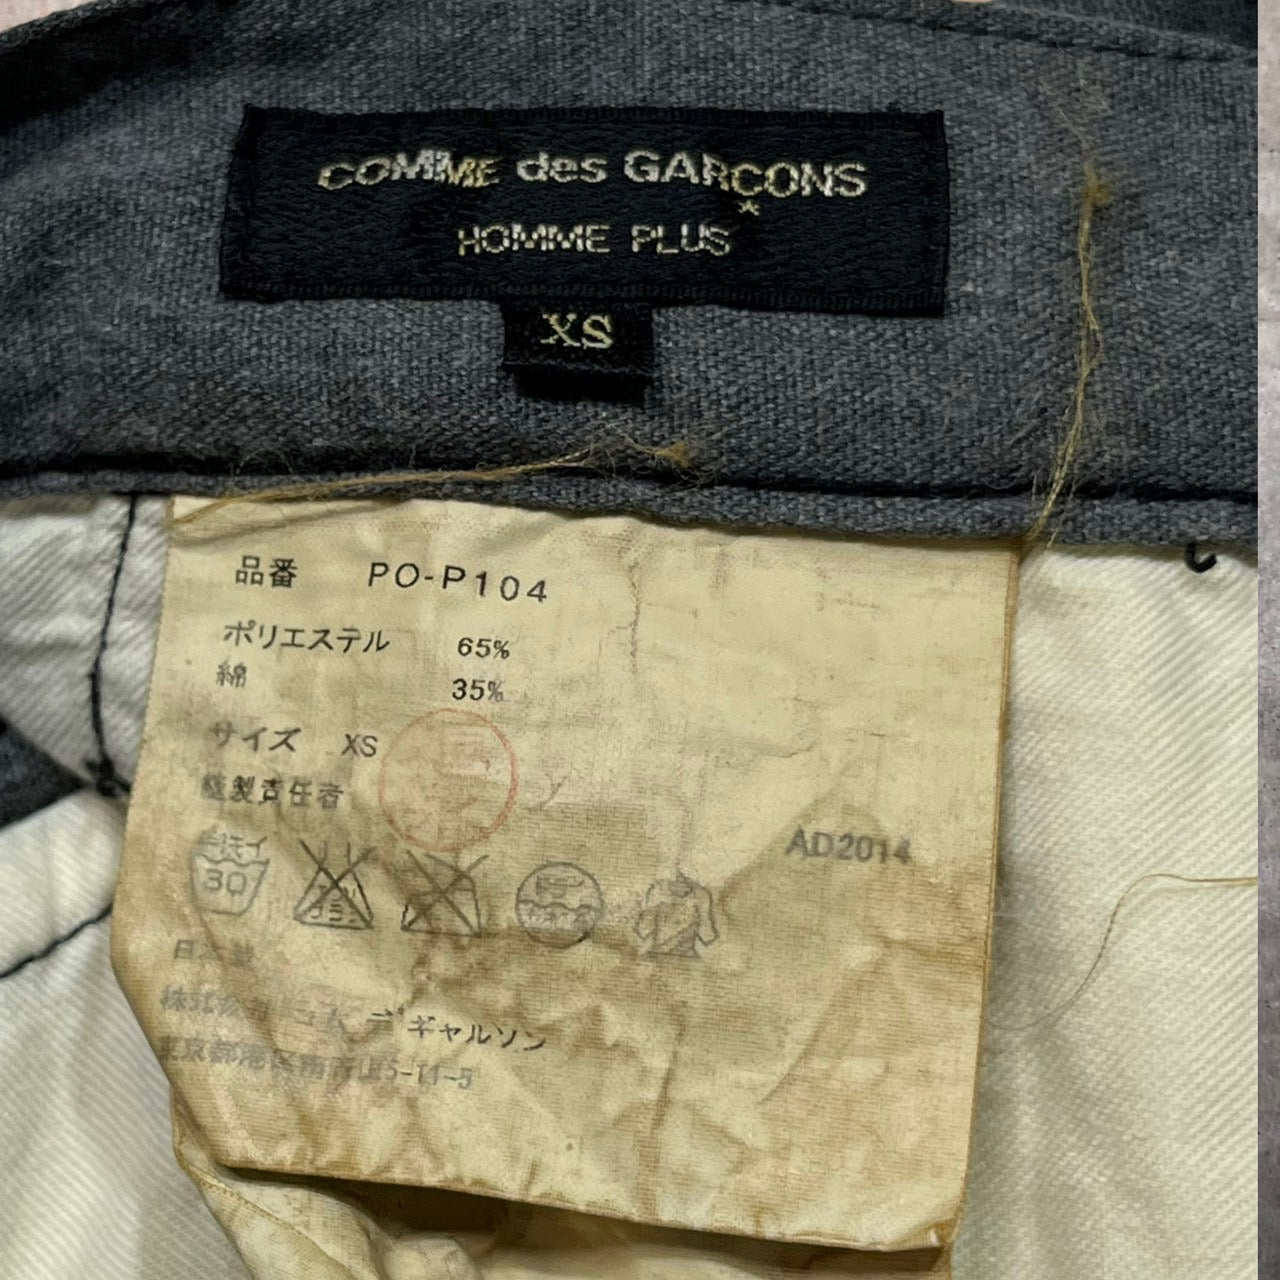 COMME des GARCONS HOMME PLUS(コムデギャルソンオムプリュス) 15SS polyester cotton product dyeing super sarouel pants/ポリエステルコットン製品染めスーパーサルエルパンツ/ペンギンパンツ PO-P104 SIZE XS グレー AD2014 平和の軍隊